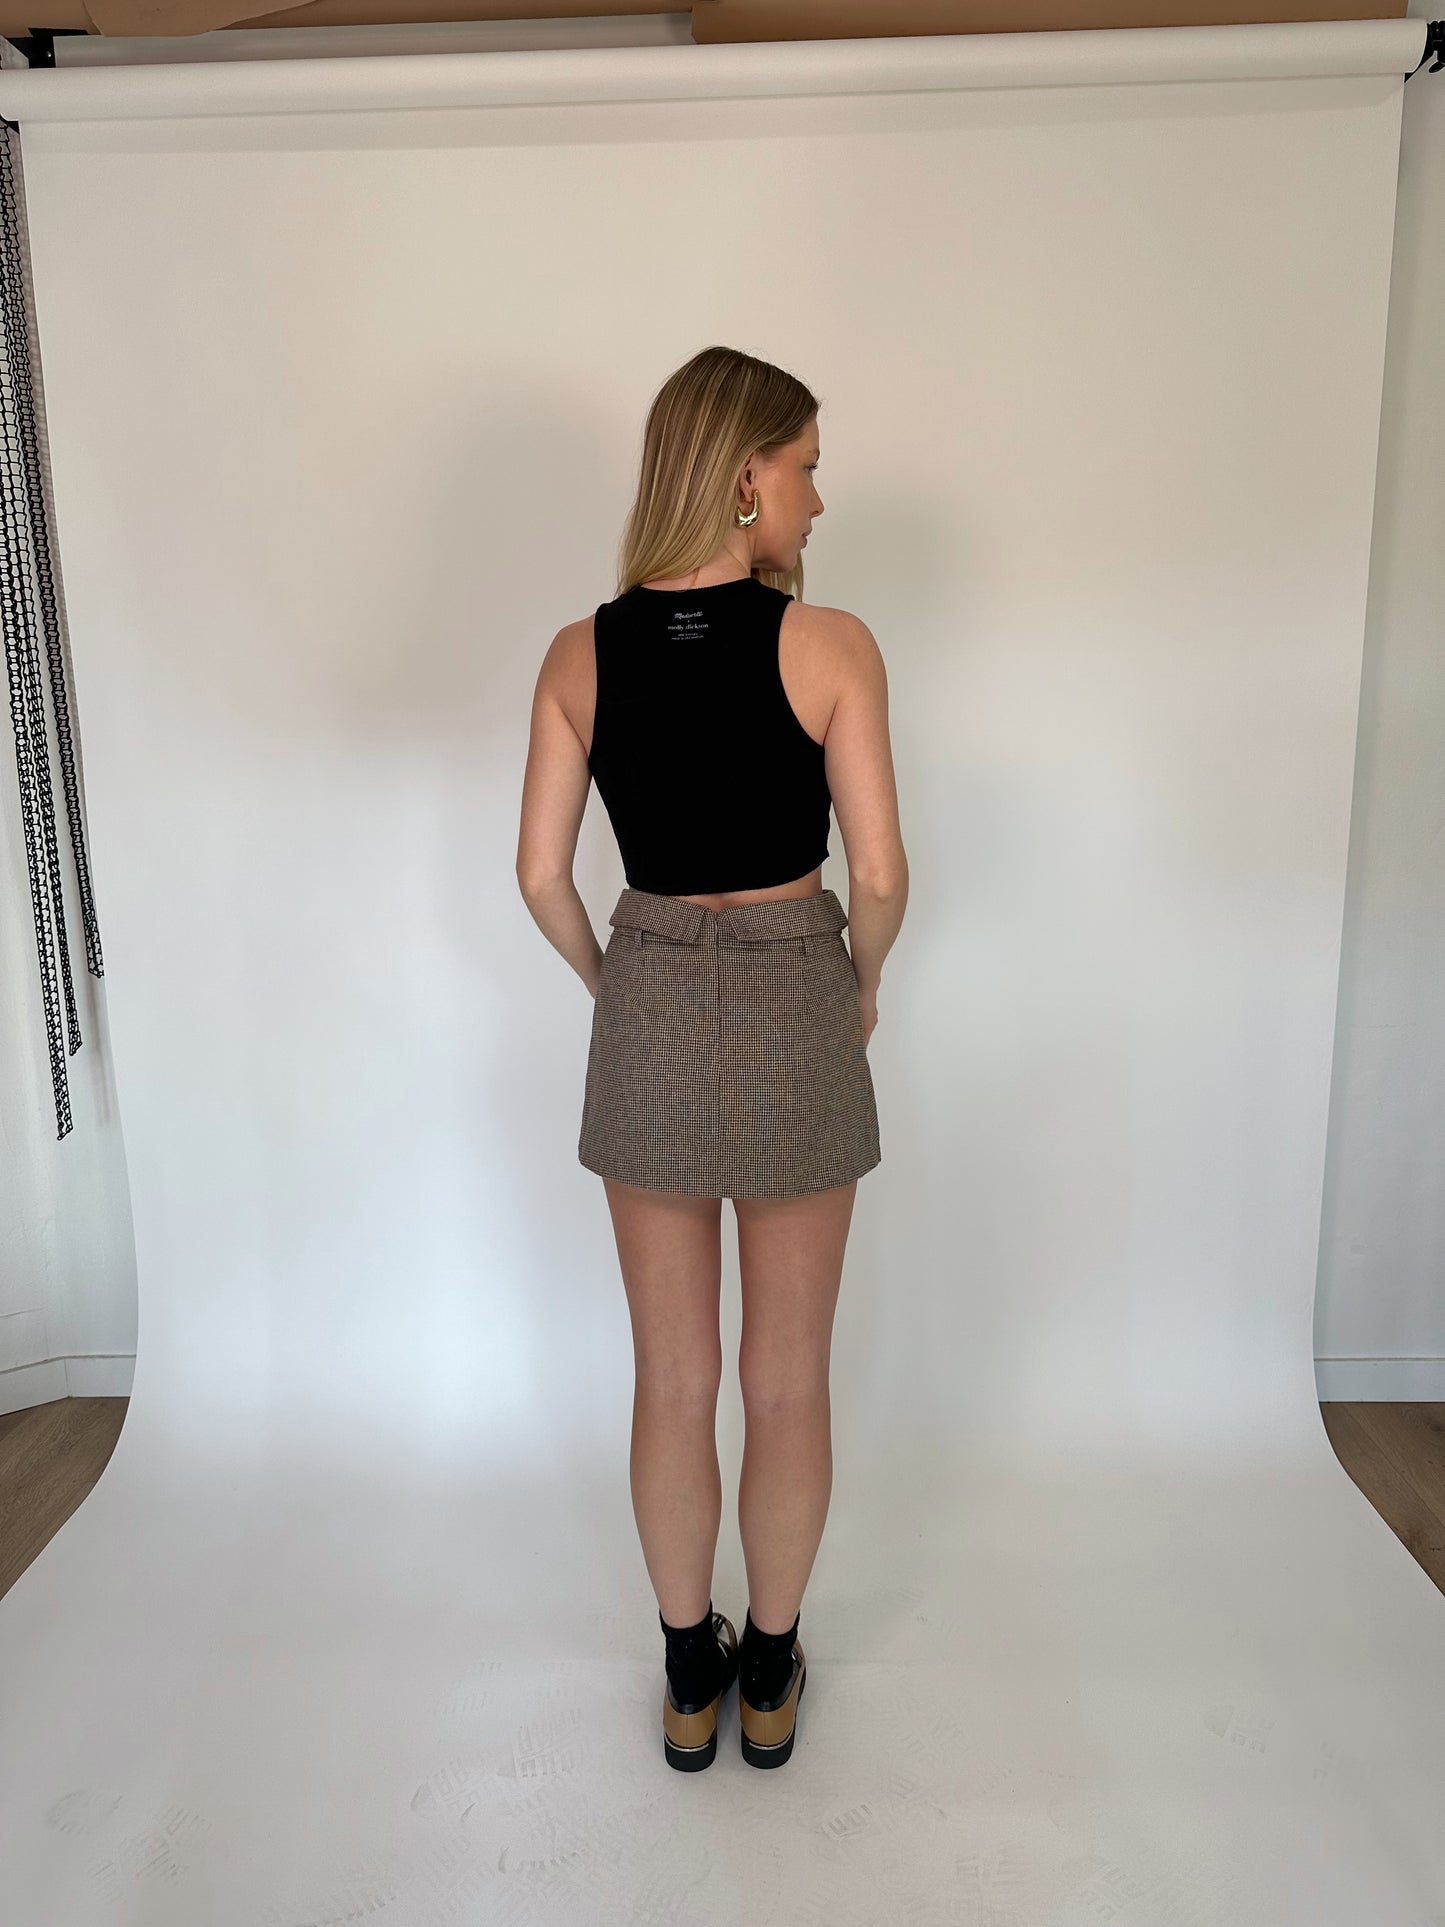 Skylar Skirt